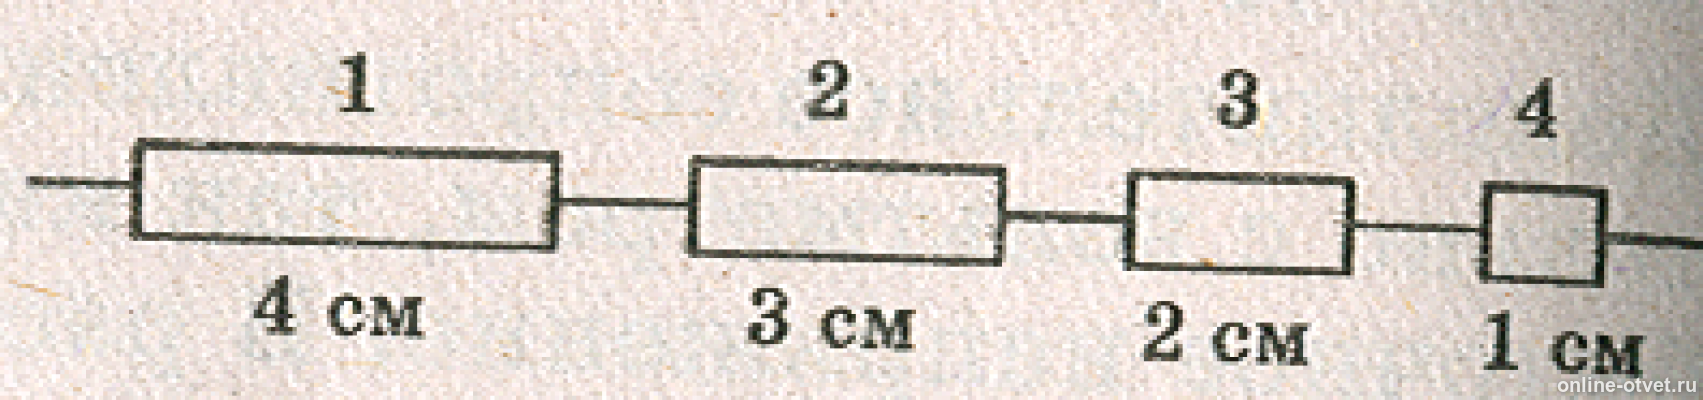 В цепи состоящей из трех одинаковых. Три проводки одинаковой длины и поперечного сечения. Электрическая цепь из разных сечений проводов. Электрическая цепь состоит из одинаковых провод. Проводники разной длины.